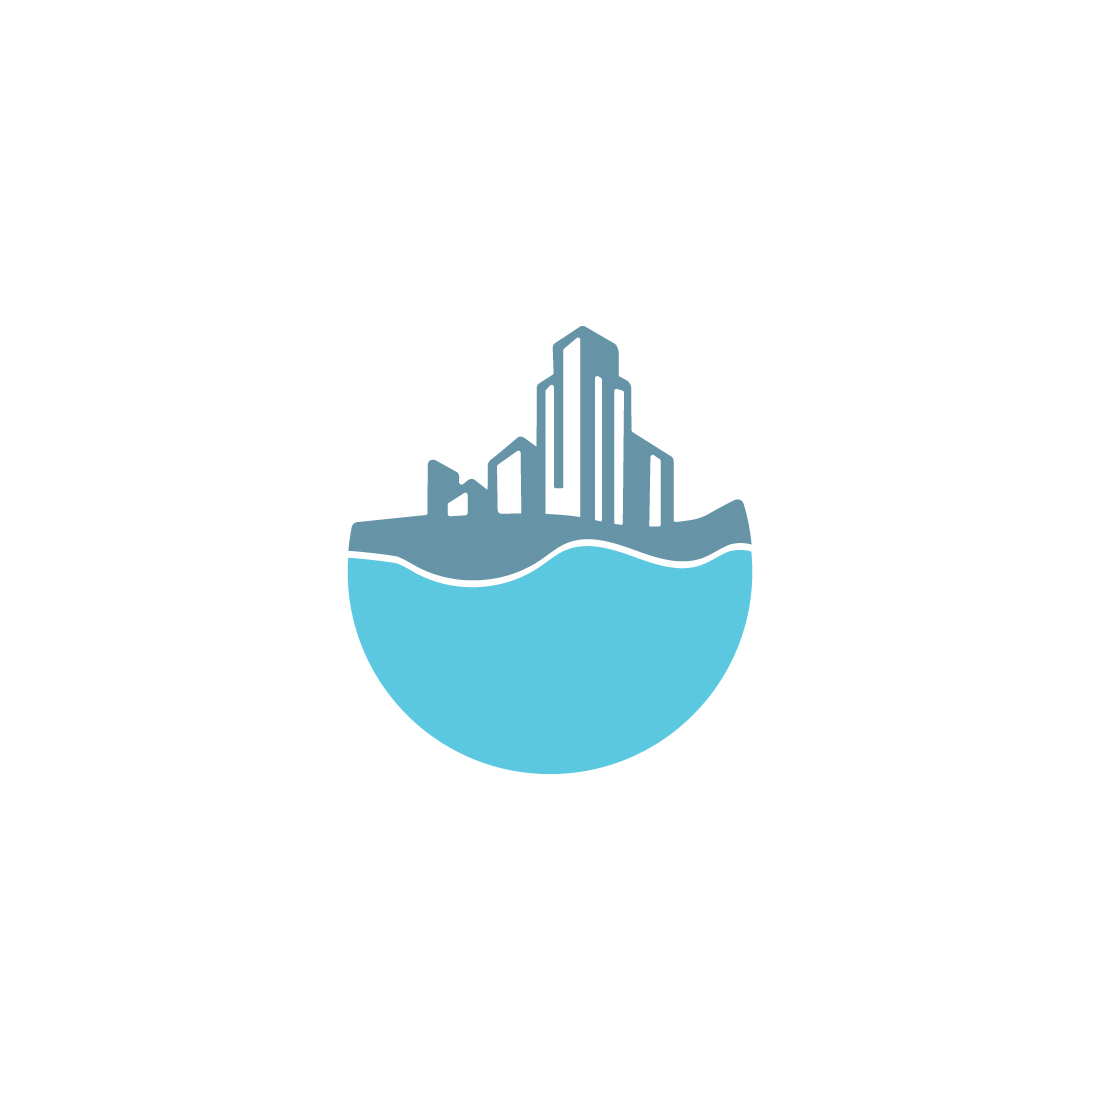 Ocean Logo - Free Vectors & PSDs to Download